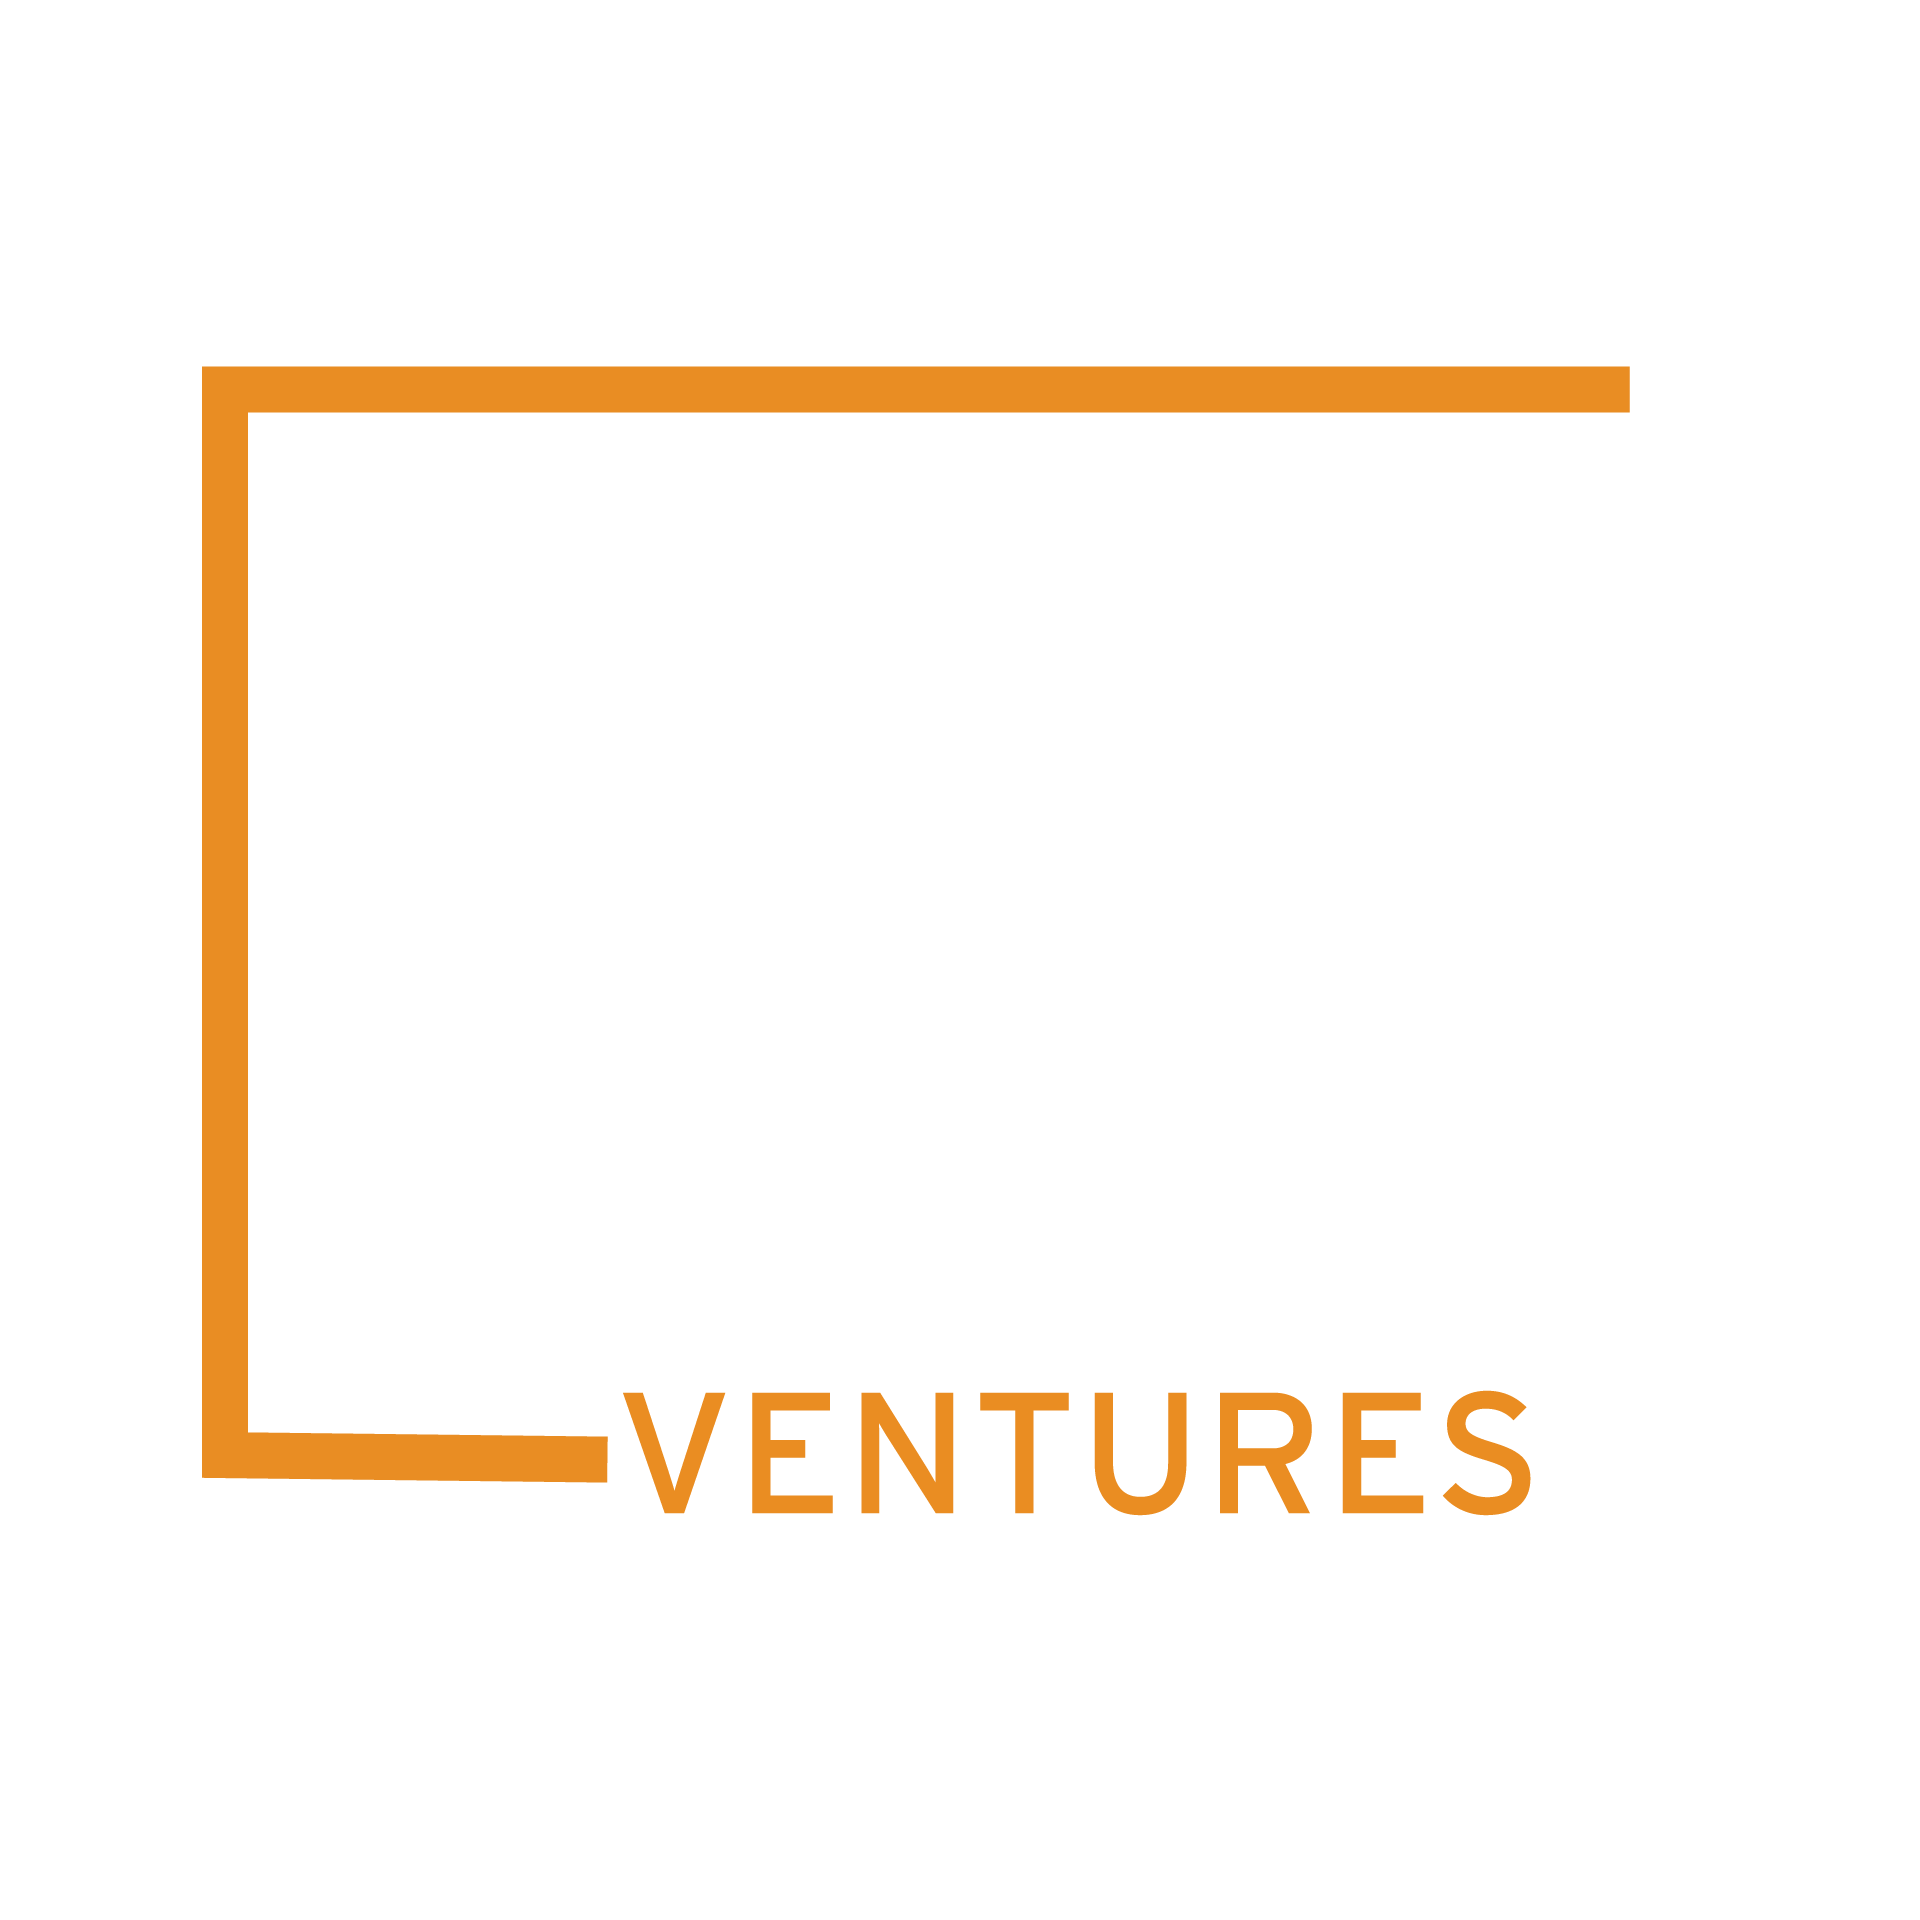 98 Ventures